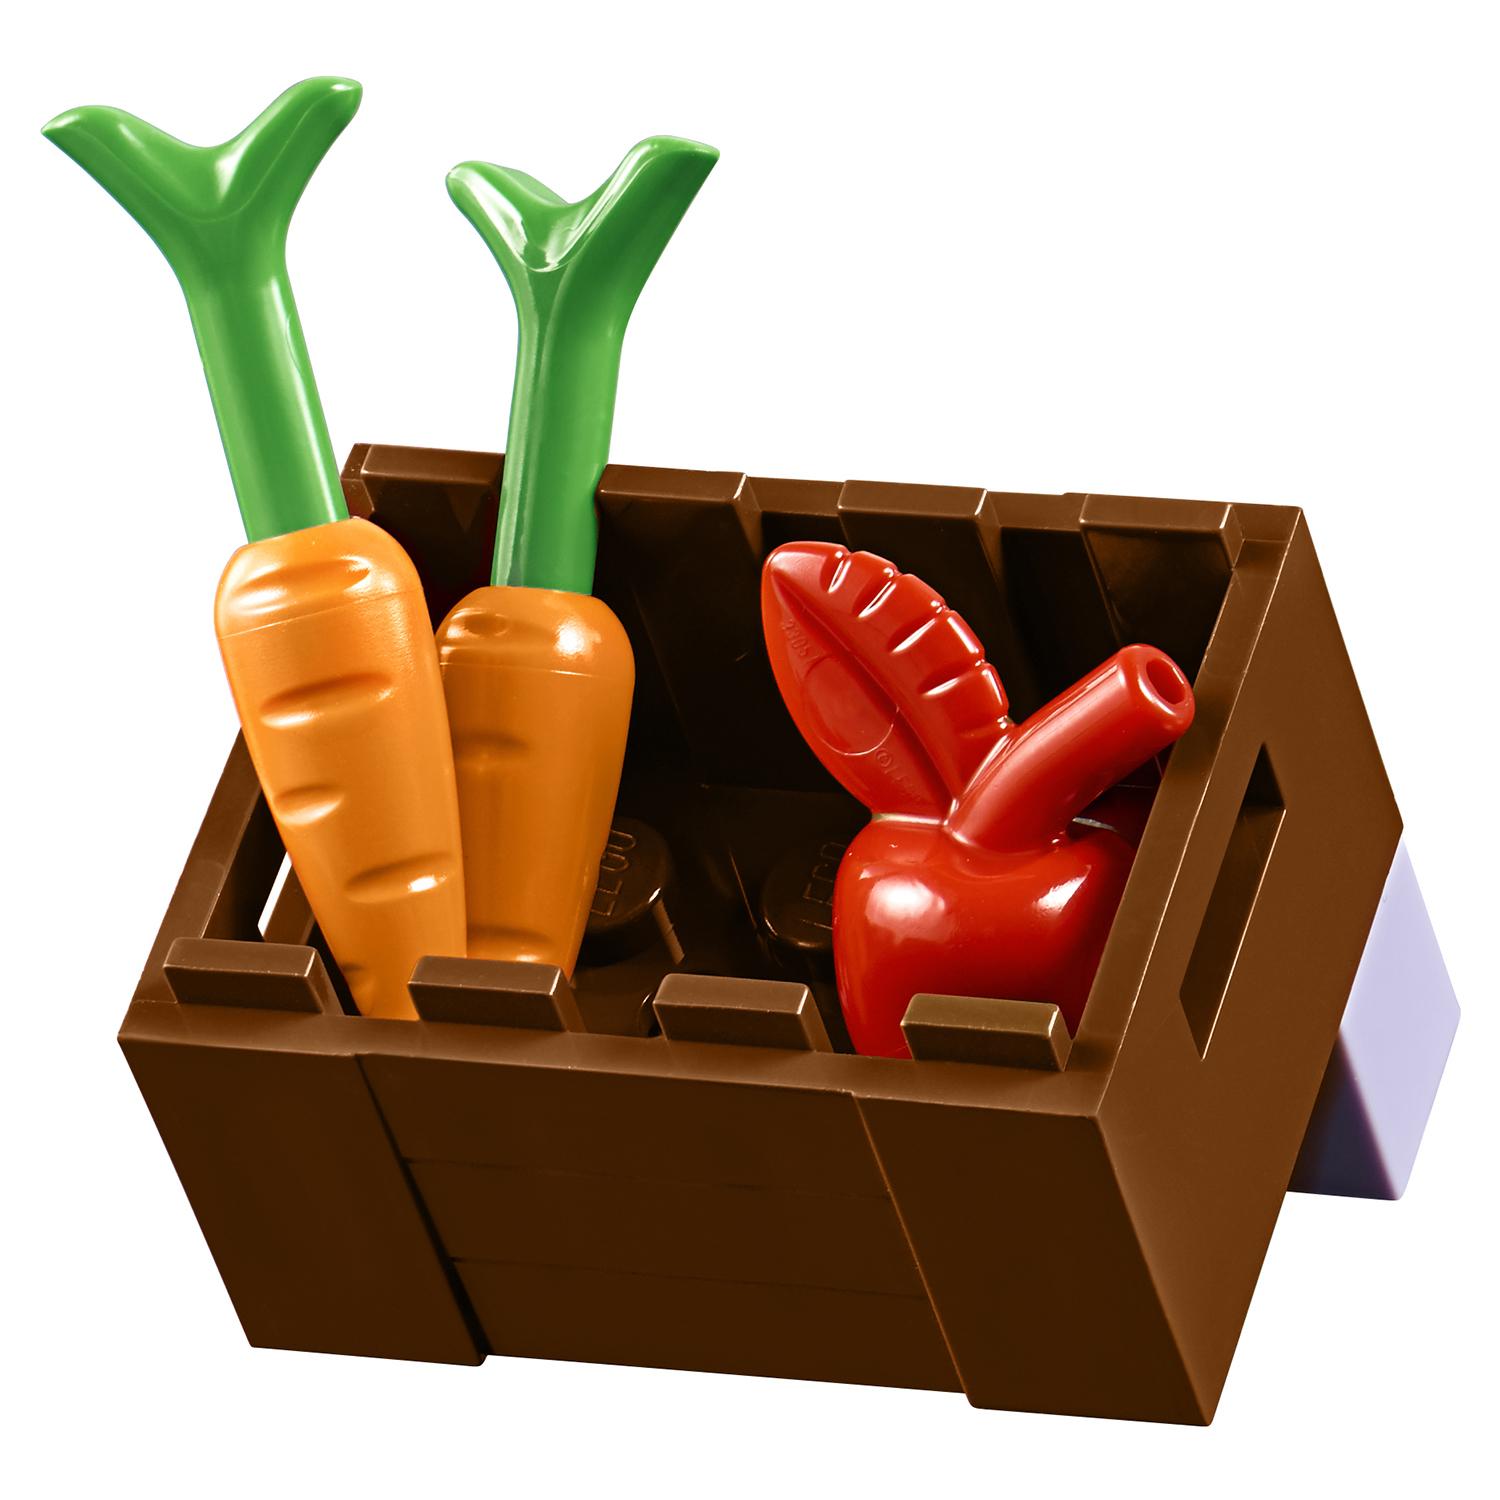 Конструктор Lego Juniors - Рынок органических продуктов  